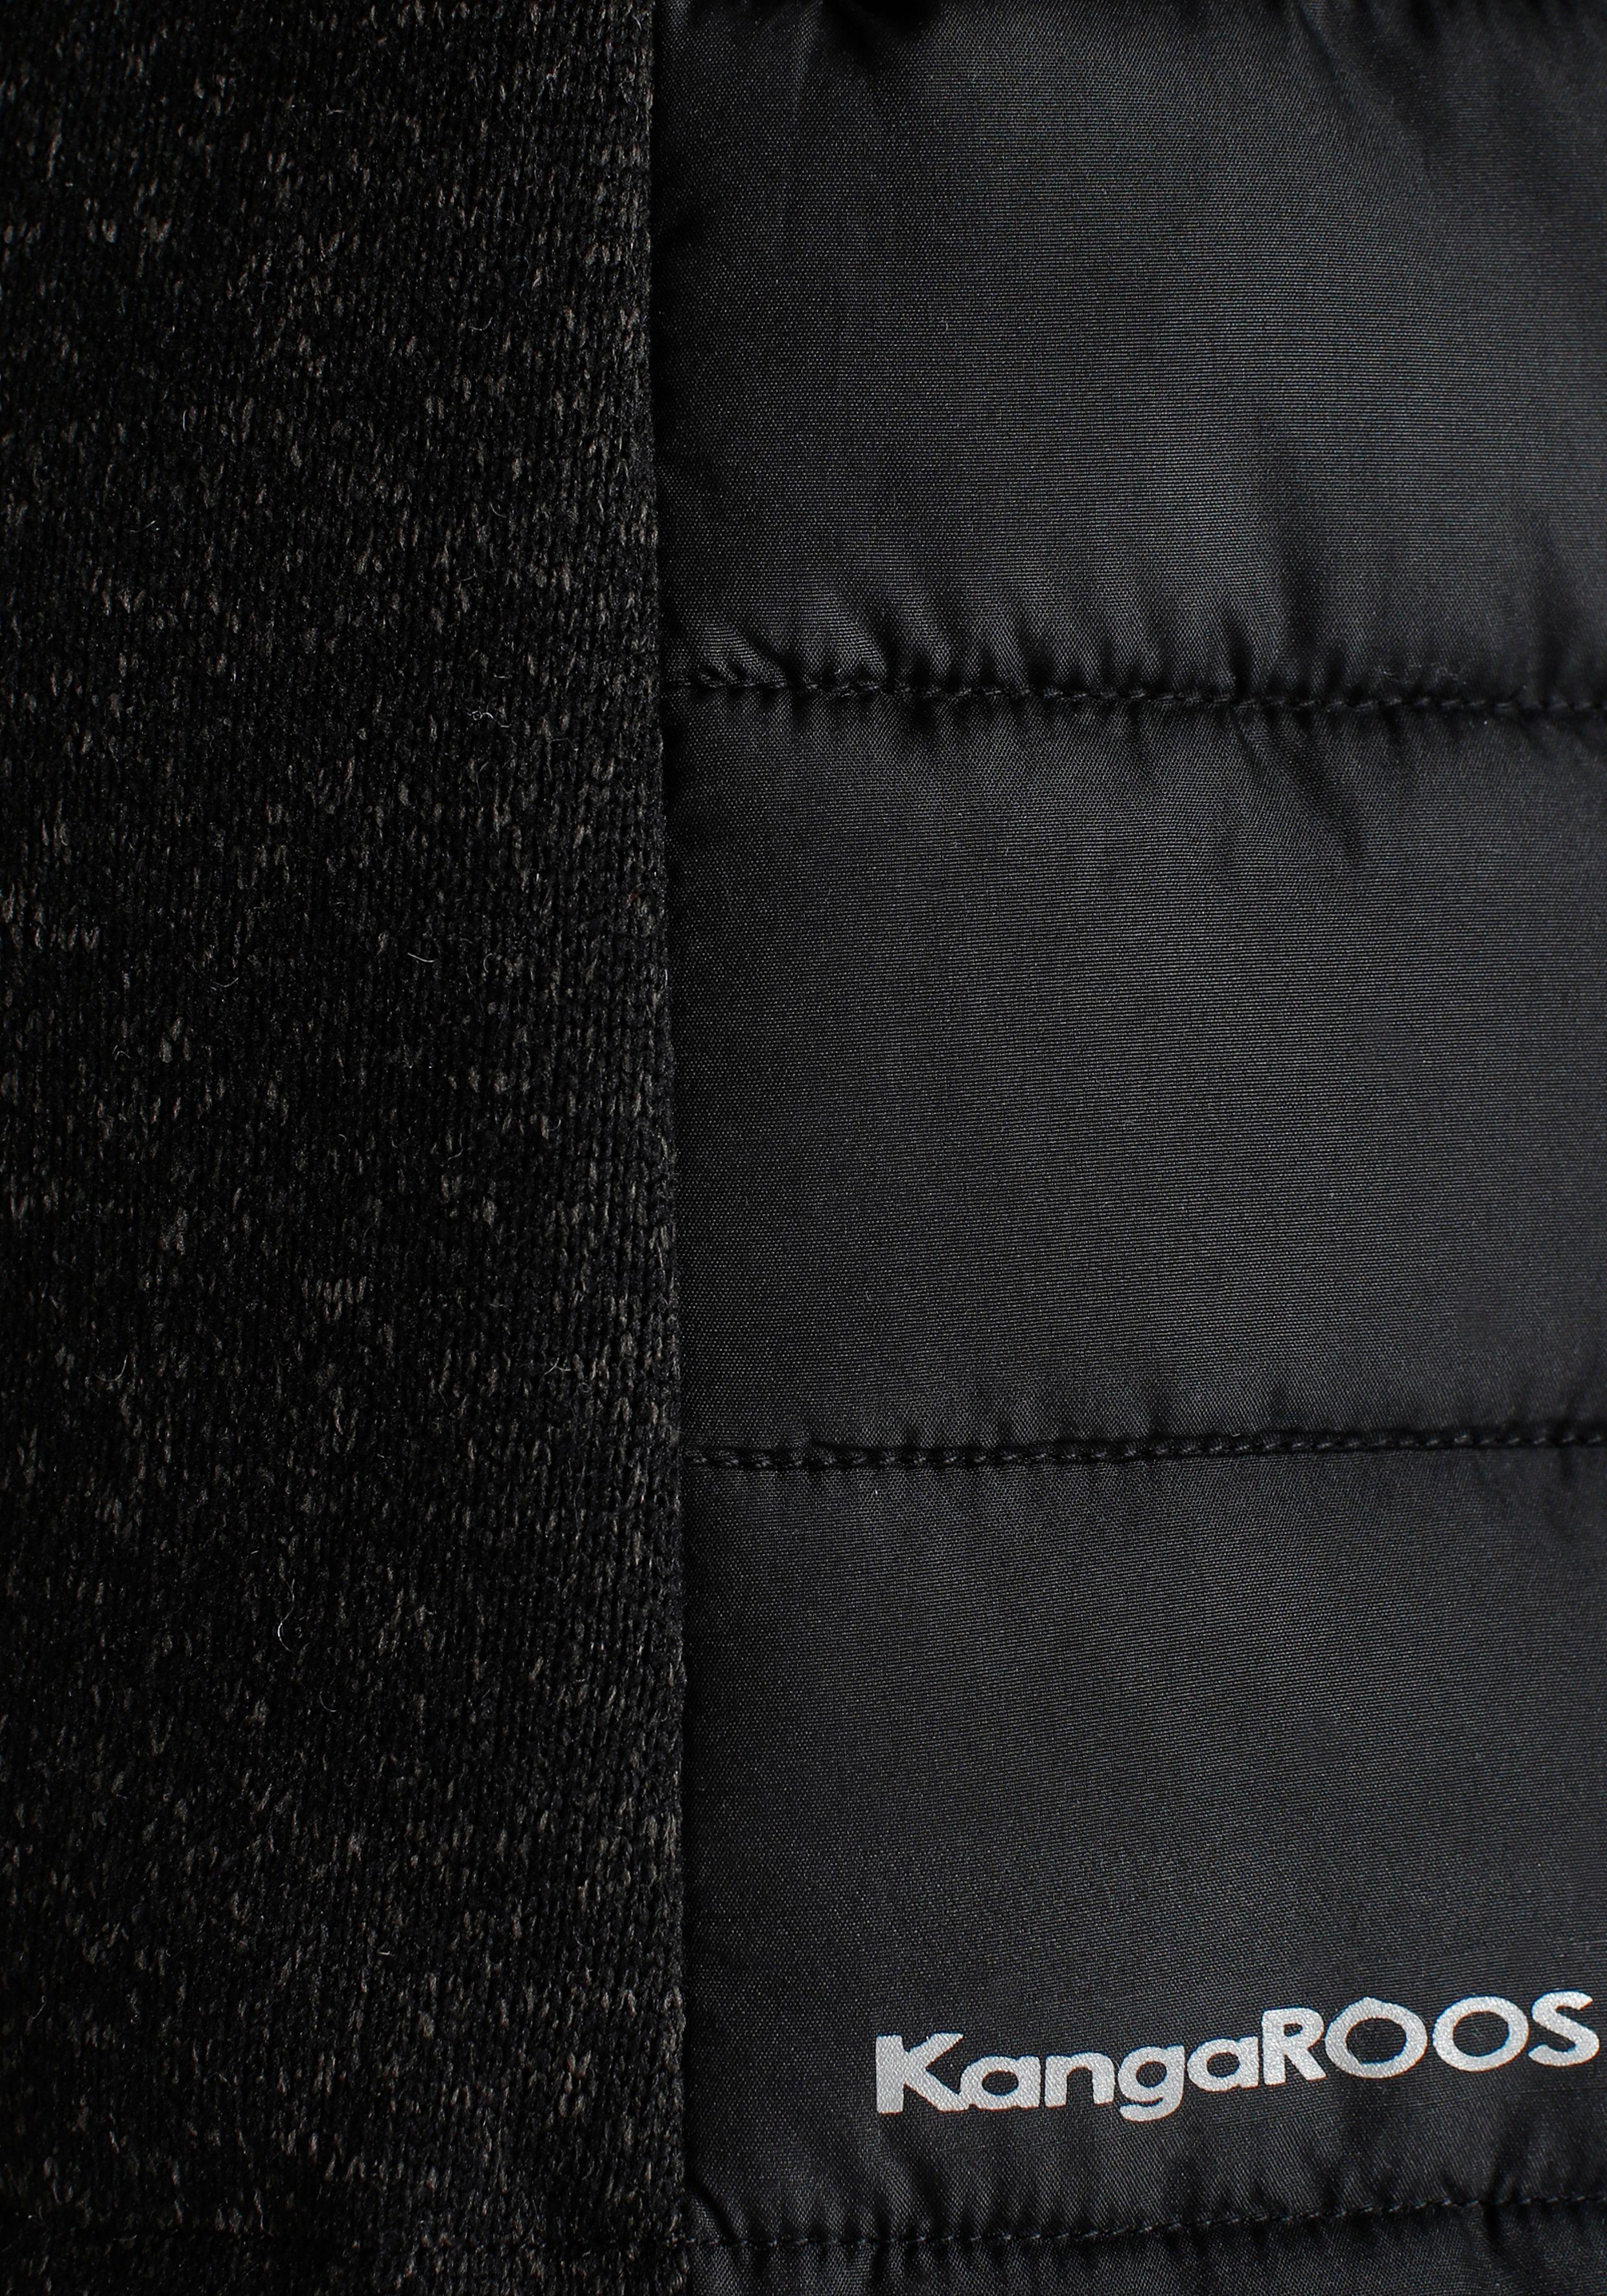 KangaROOS Steppjacke im trendigem schwarz NEUE - mit KOLLEKTION abnehmbarer Material-Mix Kapuze